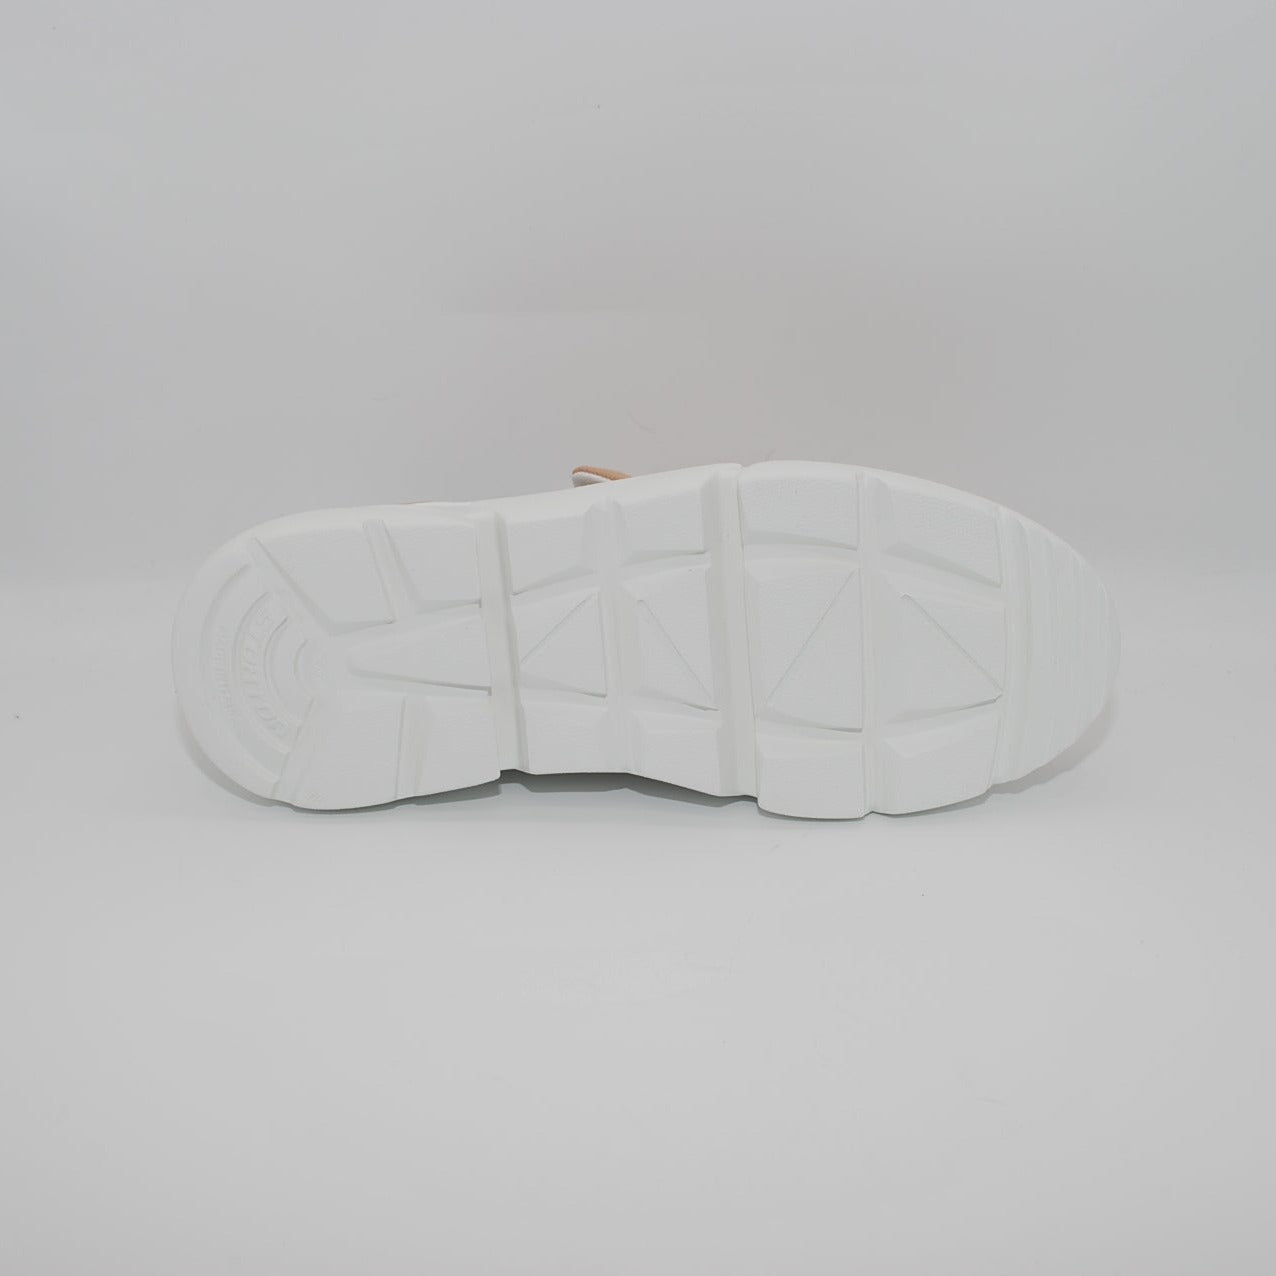 Nika Calzature | Sneakers Stokton in pelle traforata con accessorio